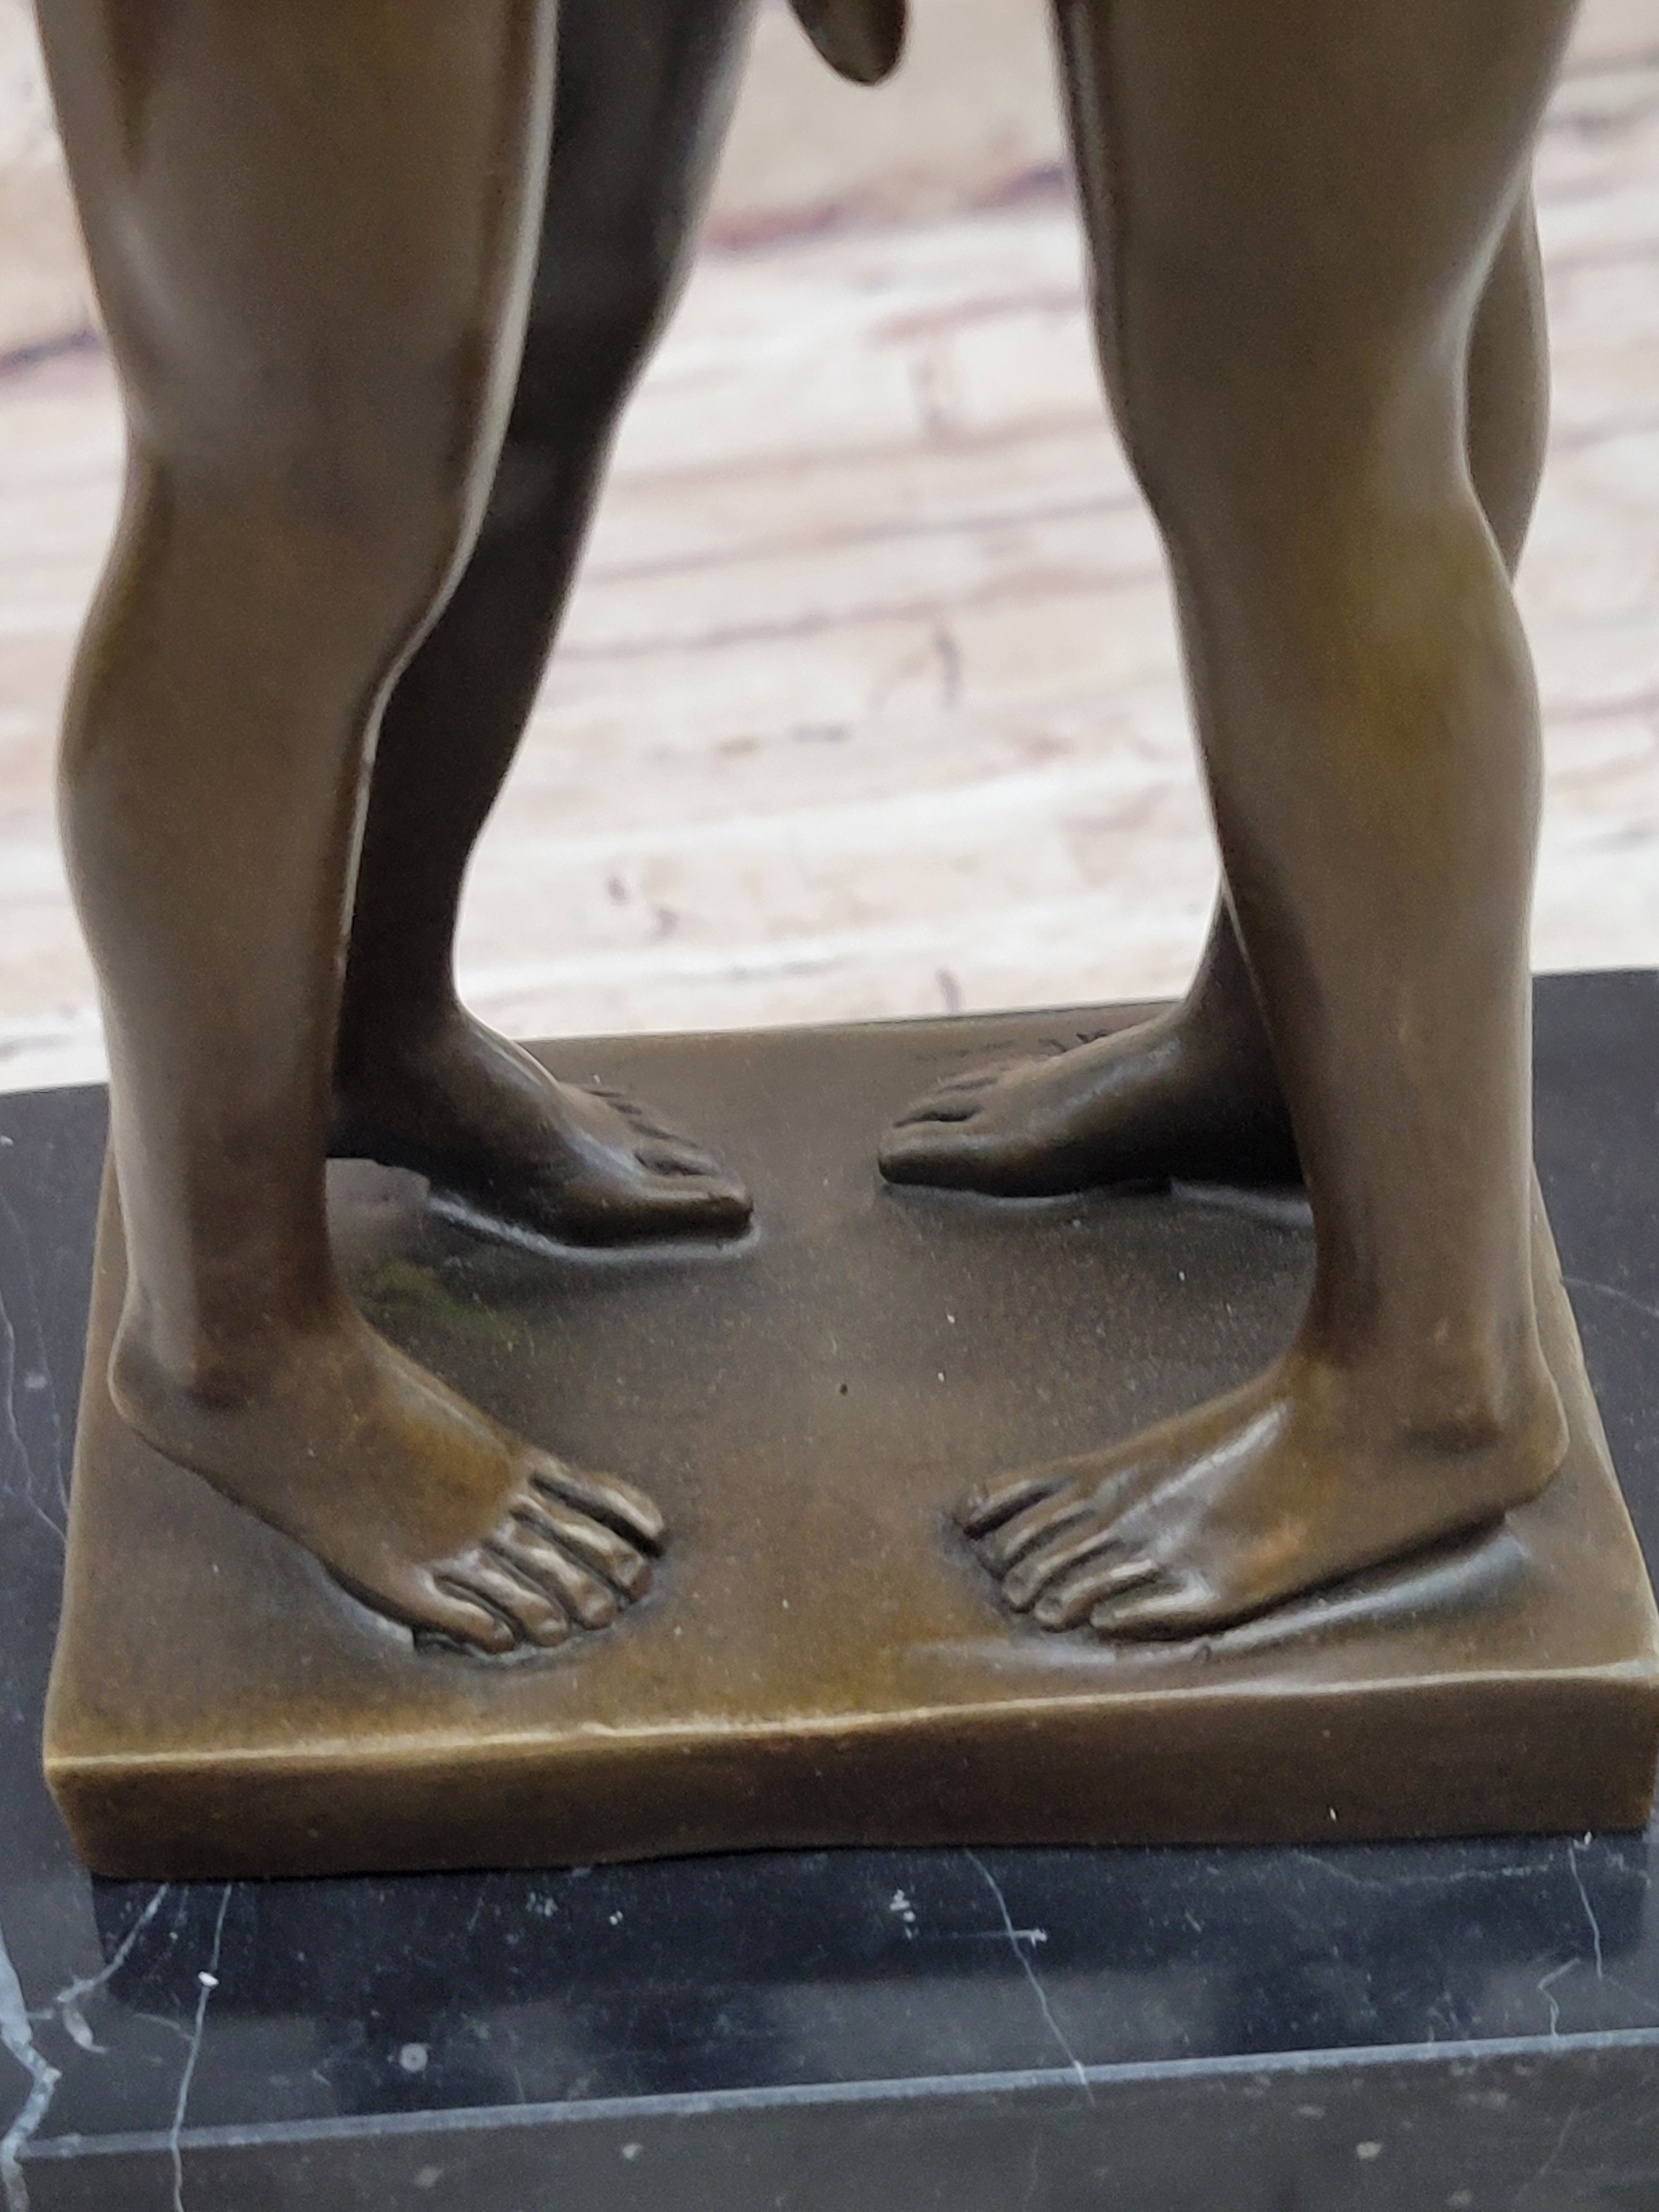 Two-Gay-Men-Engaging-in-a-flirtatious-kiss-Bronze-Hot-Cast-Sculpture-Figurine